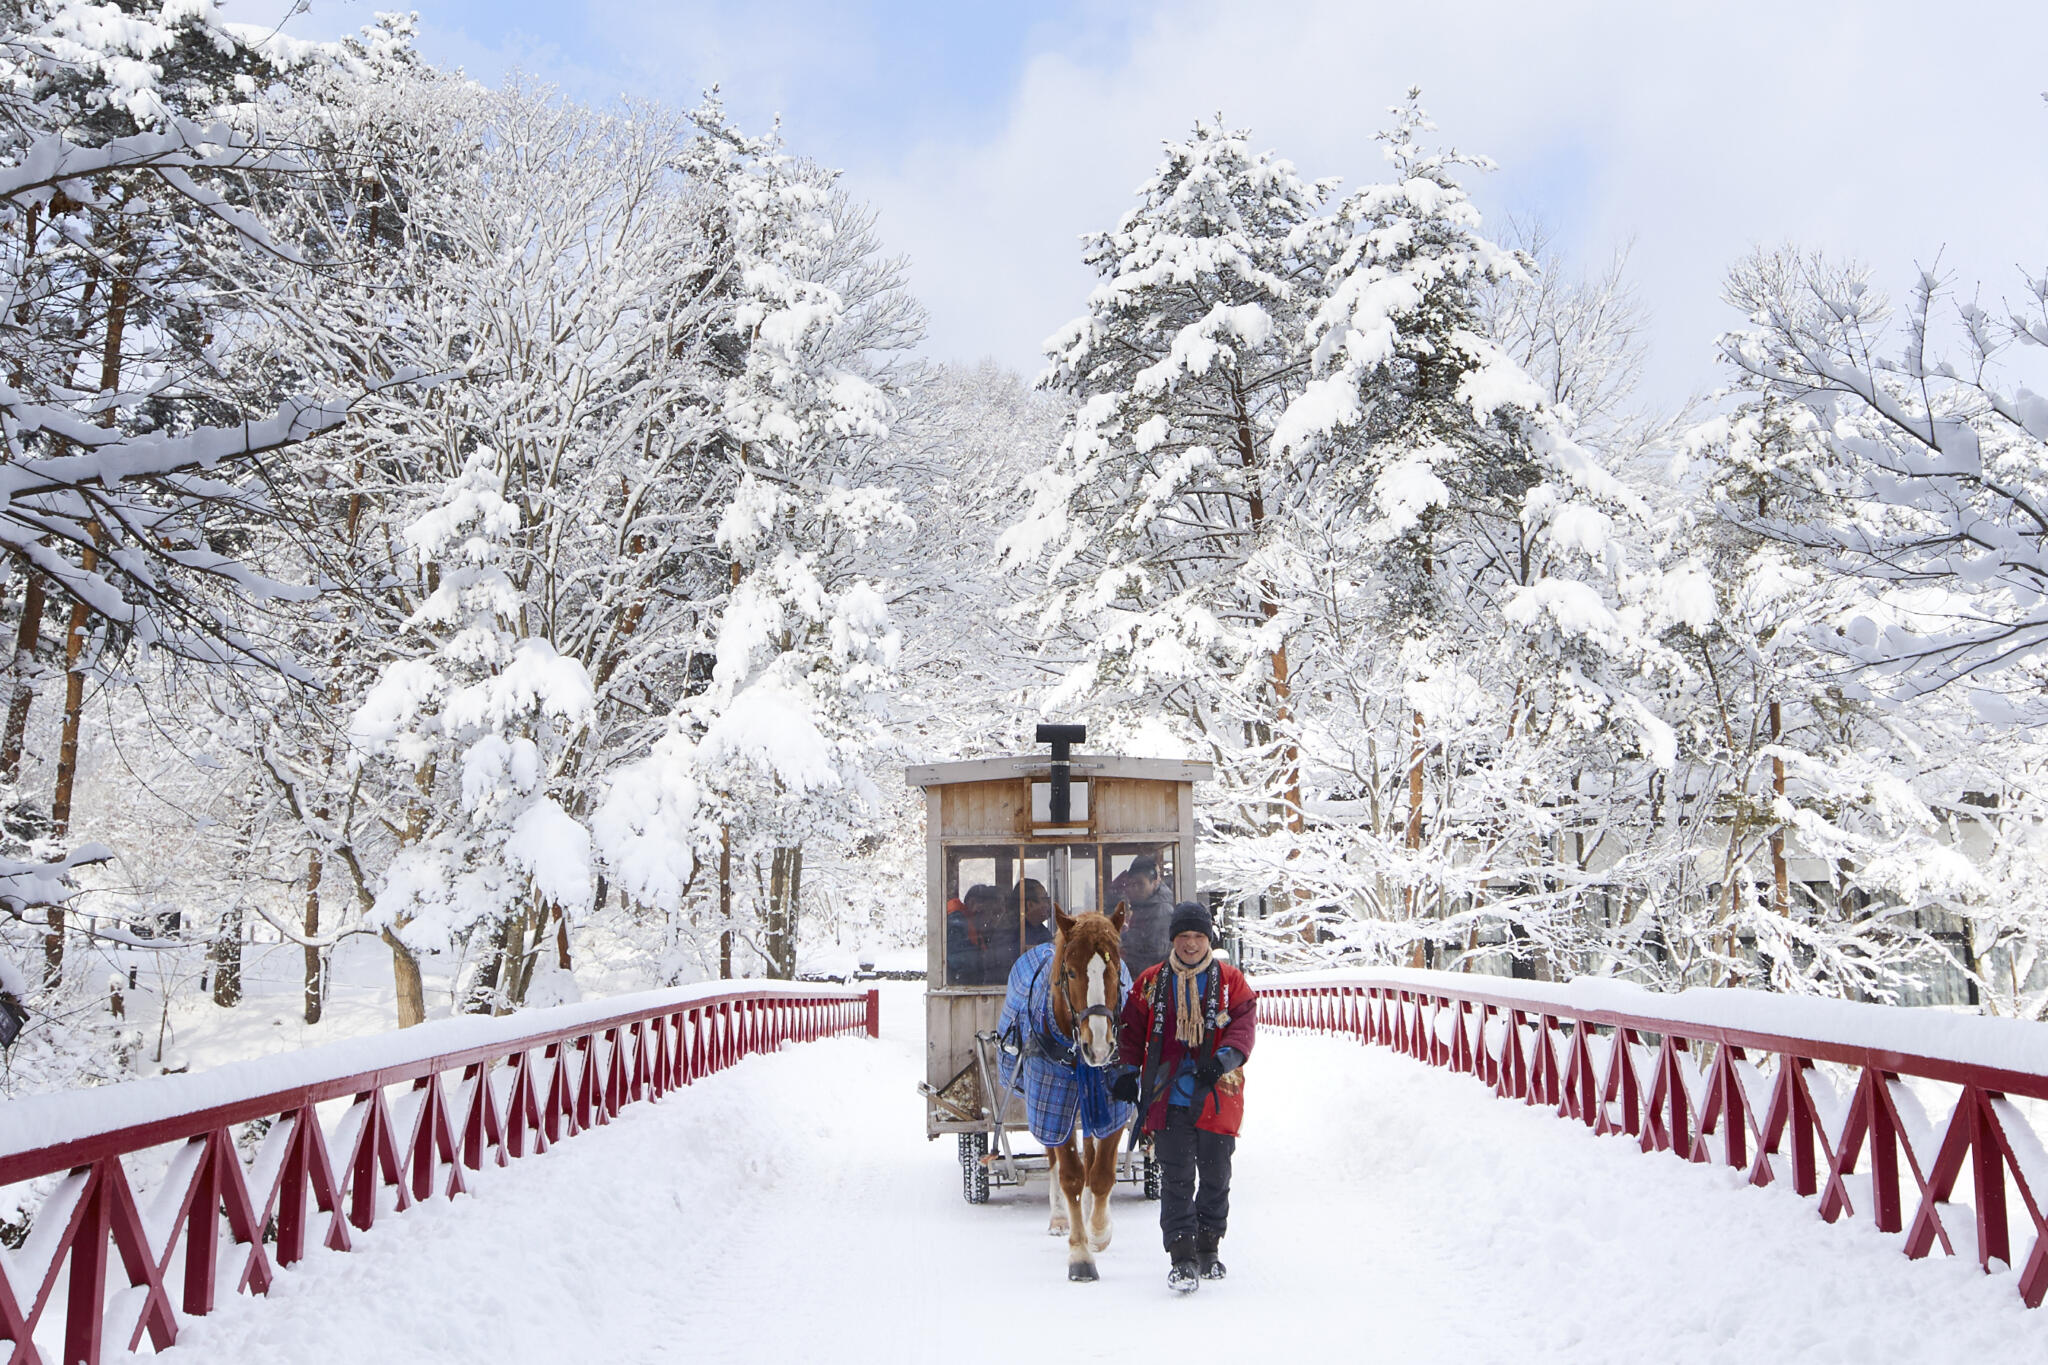 【有影】好想去日本看雪？星野集團各飯店齊推冬季活動 夢幻冰雪旅程美如畫